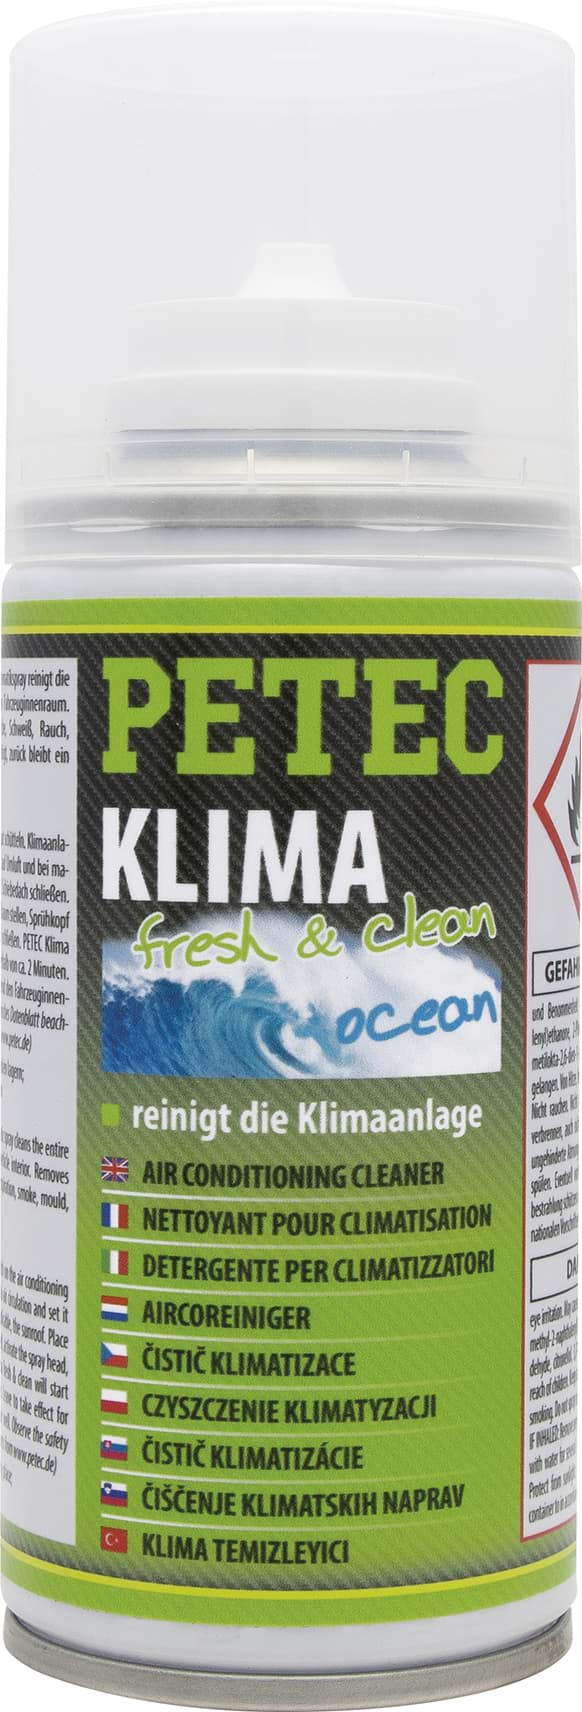 Obraz Petec KLIMA FRESH & CLEAN OCEAN AUTOMATIKSPRAY